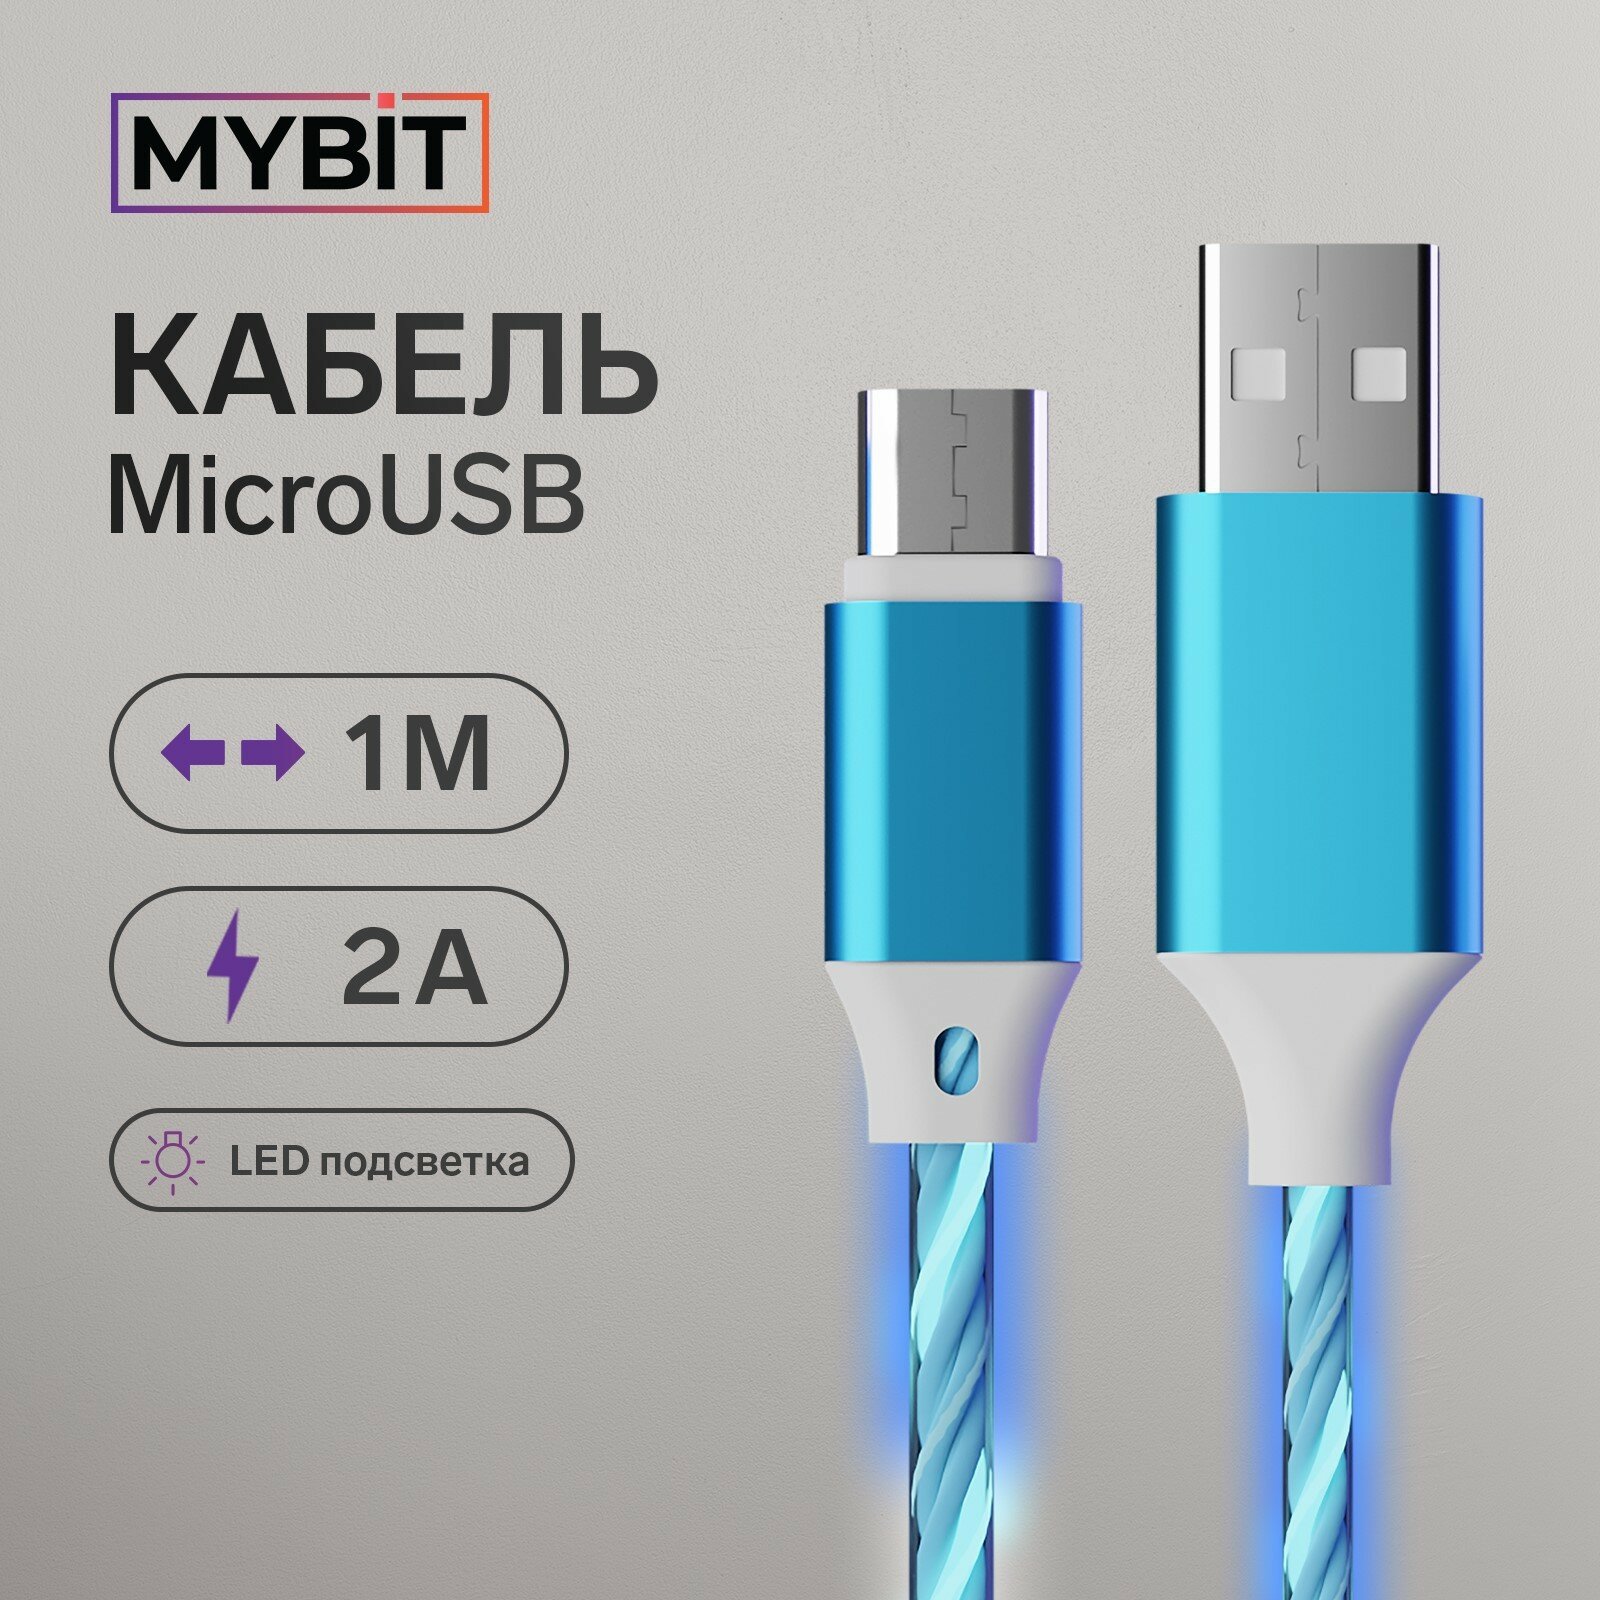 Кабель MYBIT, microUSB - USB, динамическая LED подсветка, 2 А, 1 м, только зарядка (1шт.)